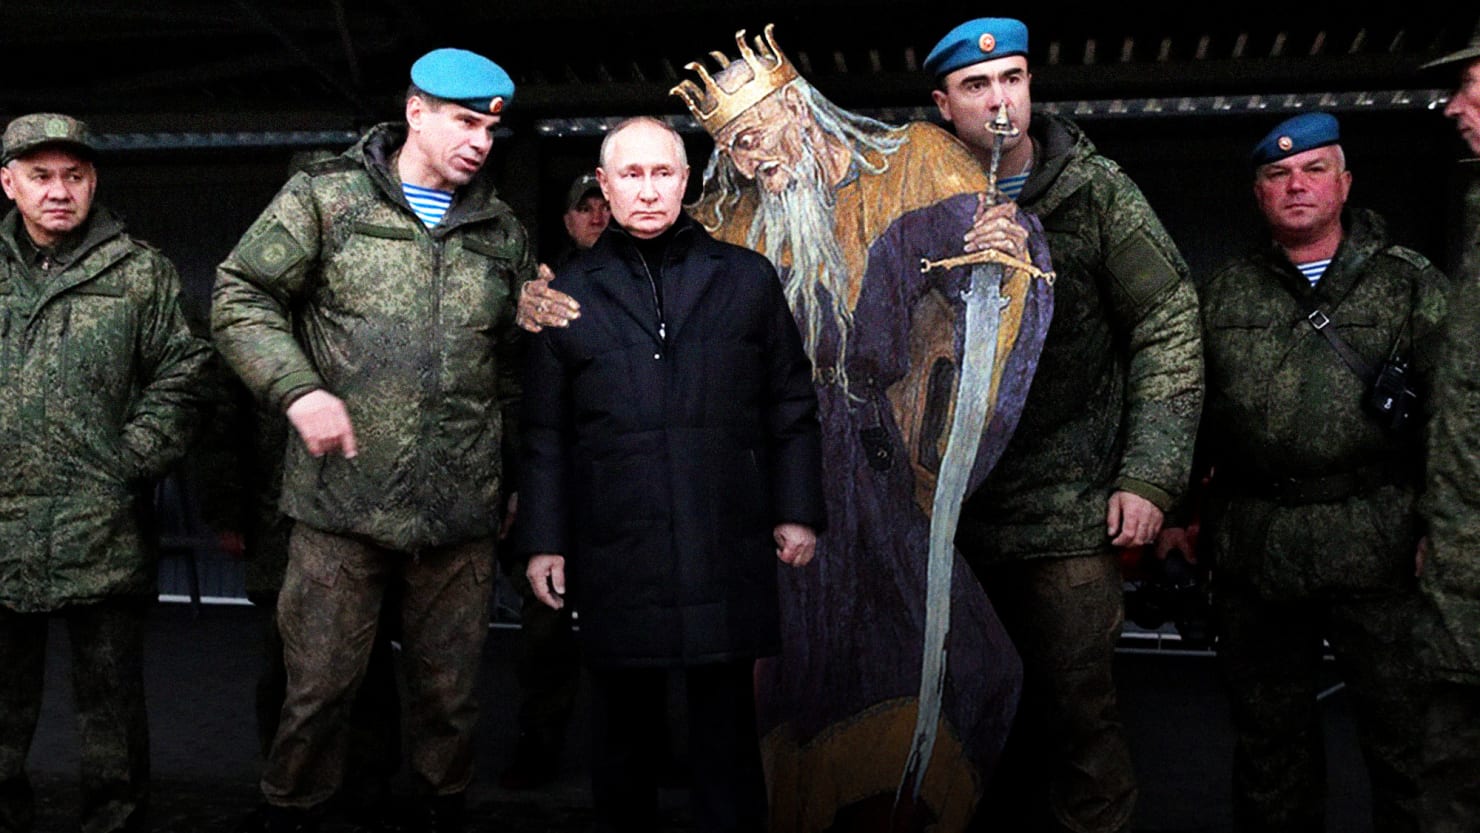 Los locos impulsos místicos que enloquecen a Putin en Ucrania